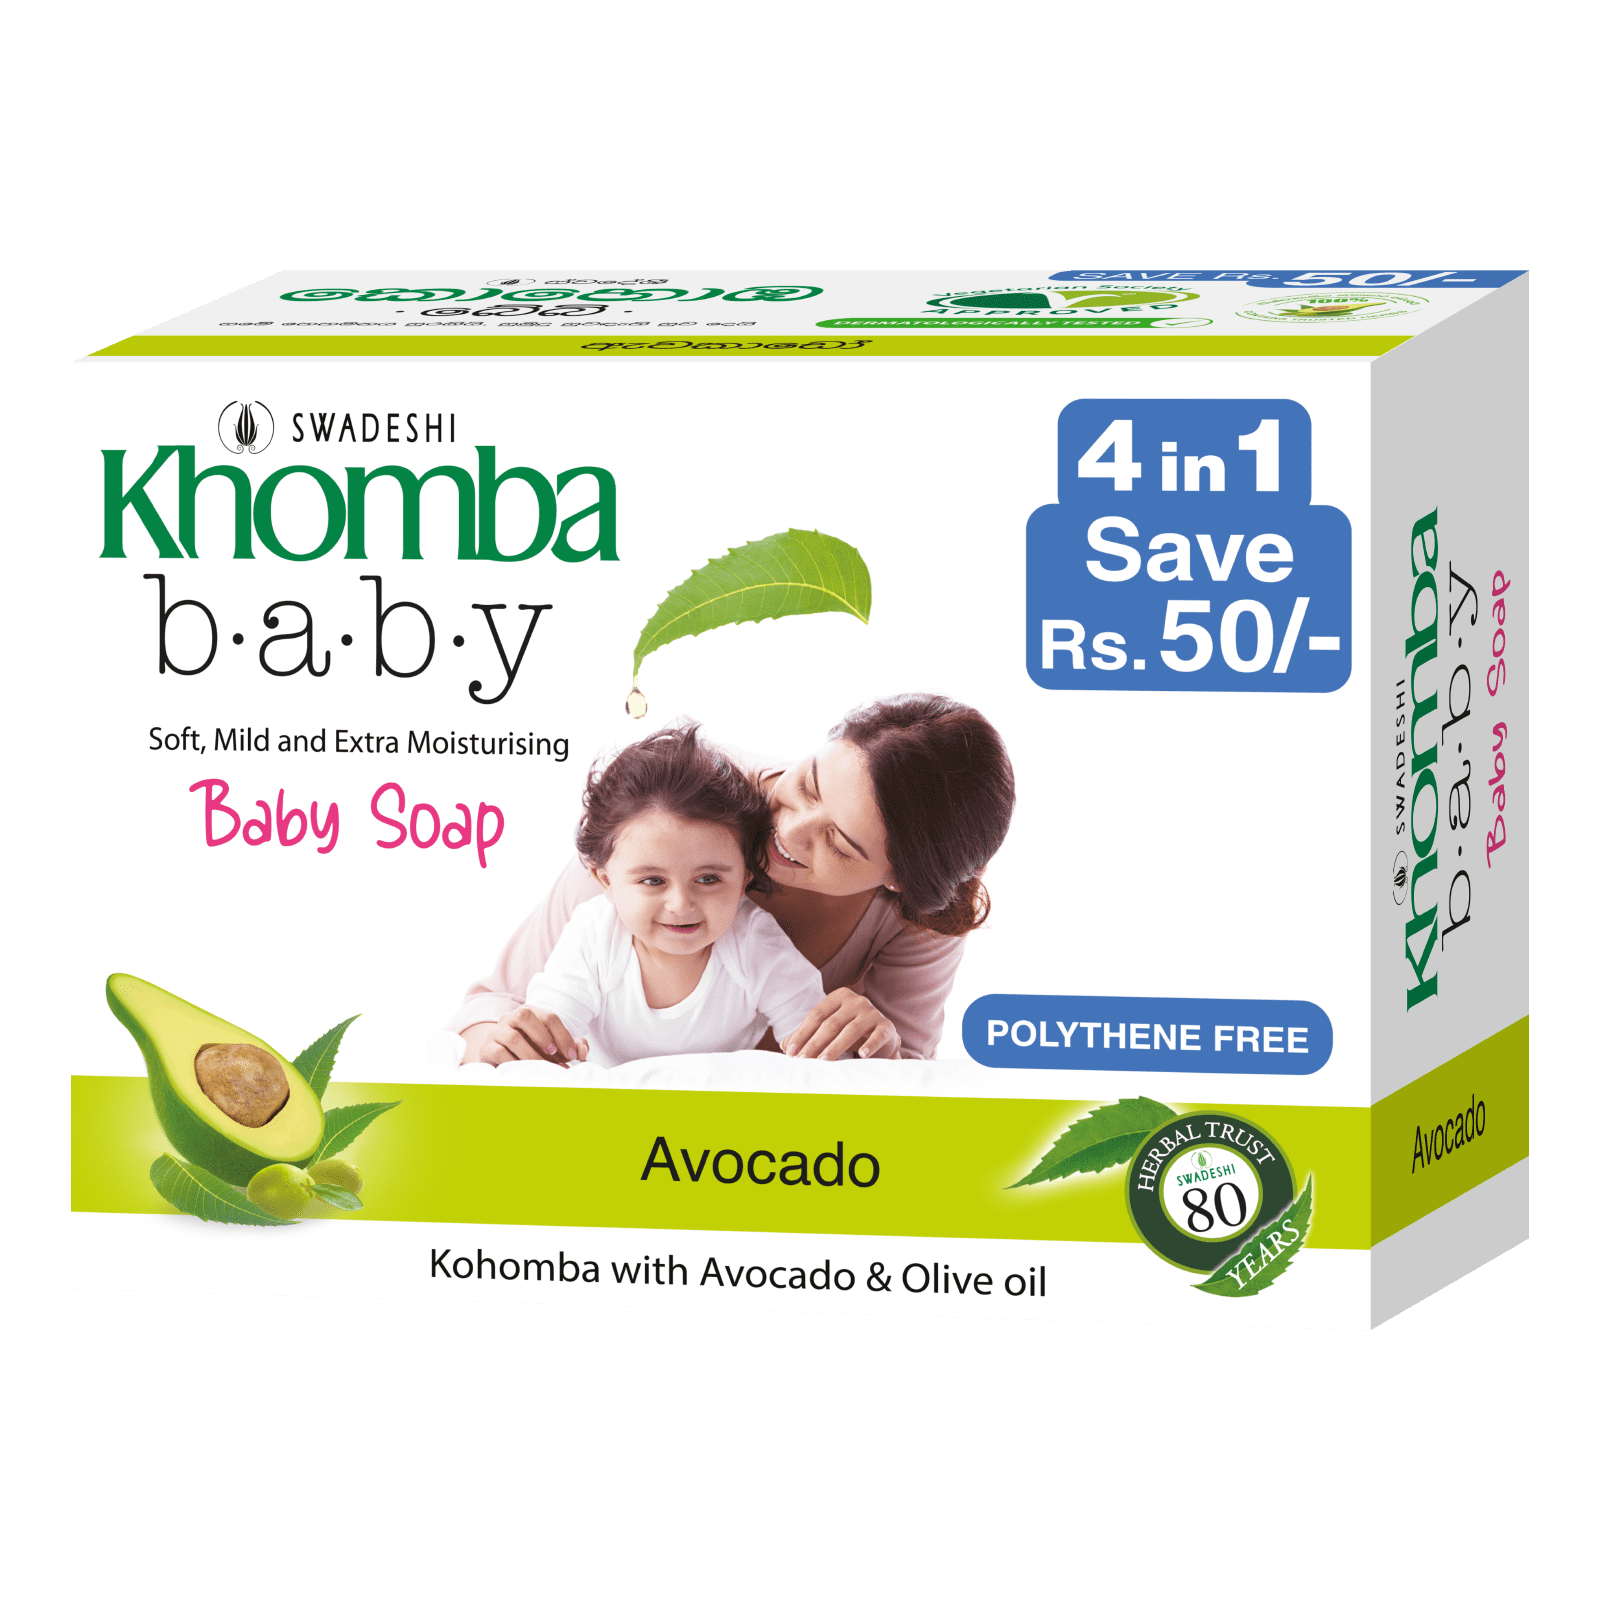 Khomba Baby Soap 4 in 1 Avocado